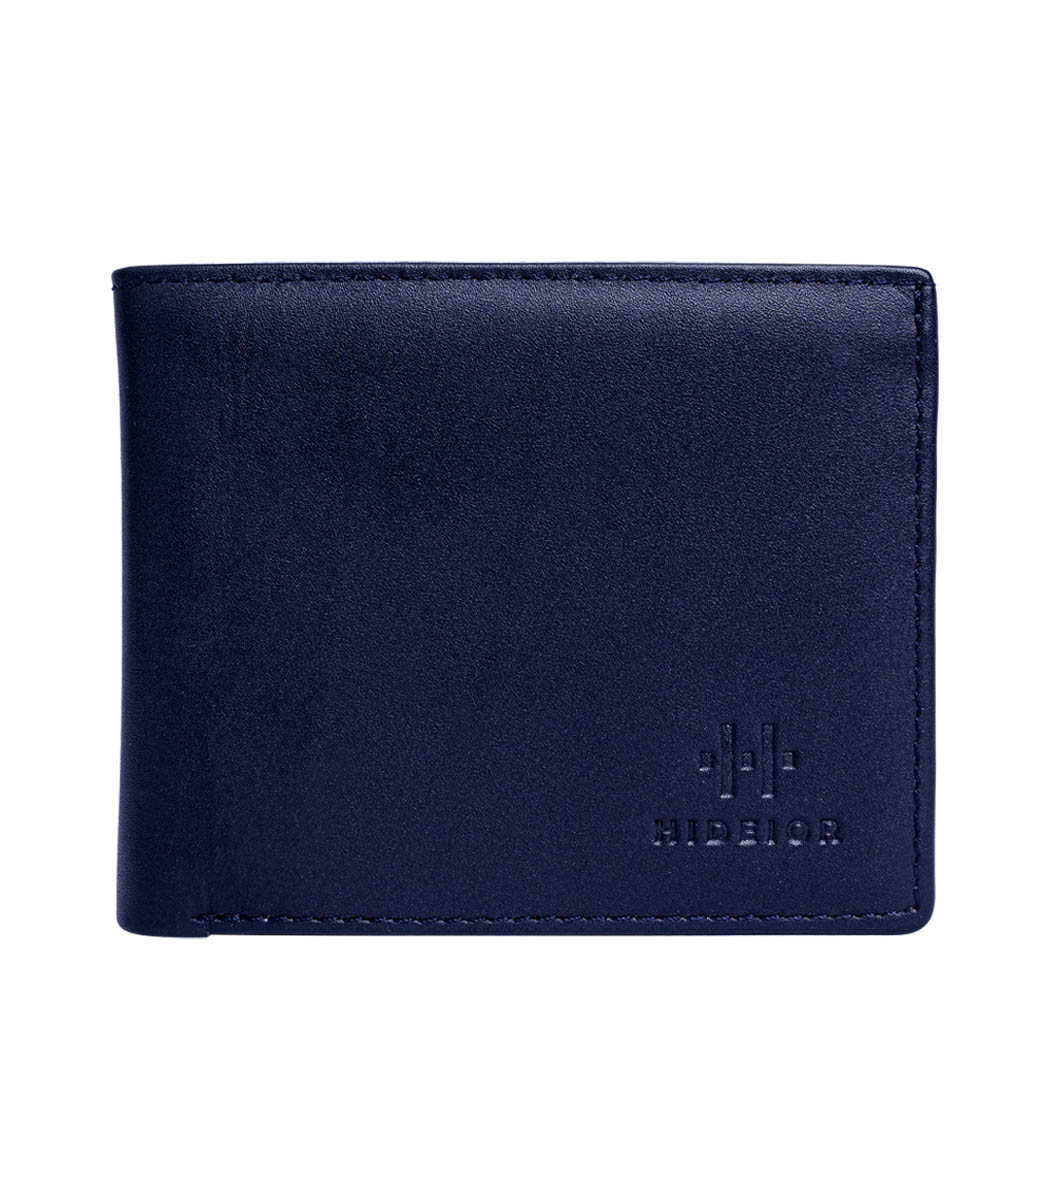 Slim blue wallet for men